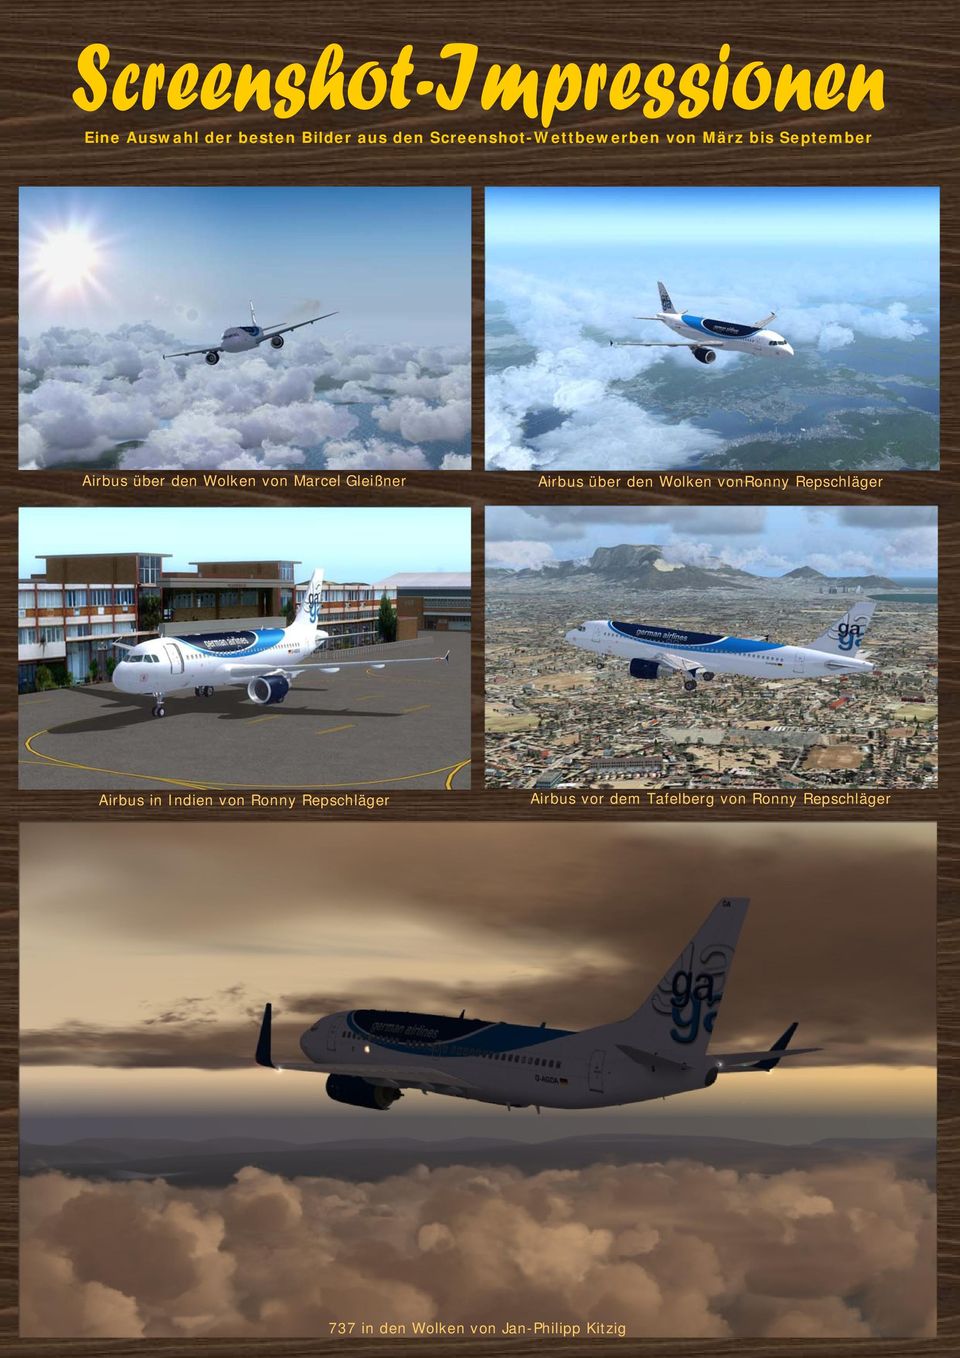 Wolken vonronny Repschläger Airbus in Indien von Ronny Repschläger Airbus